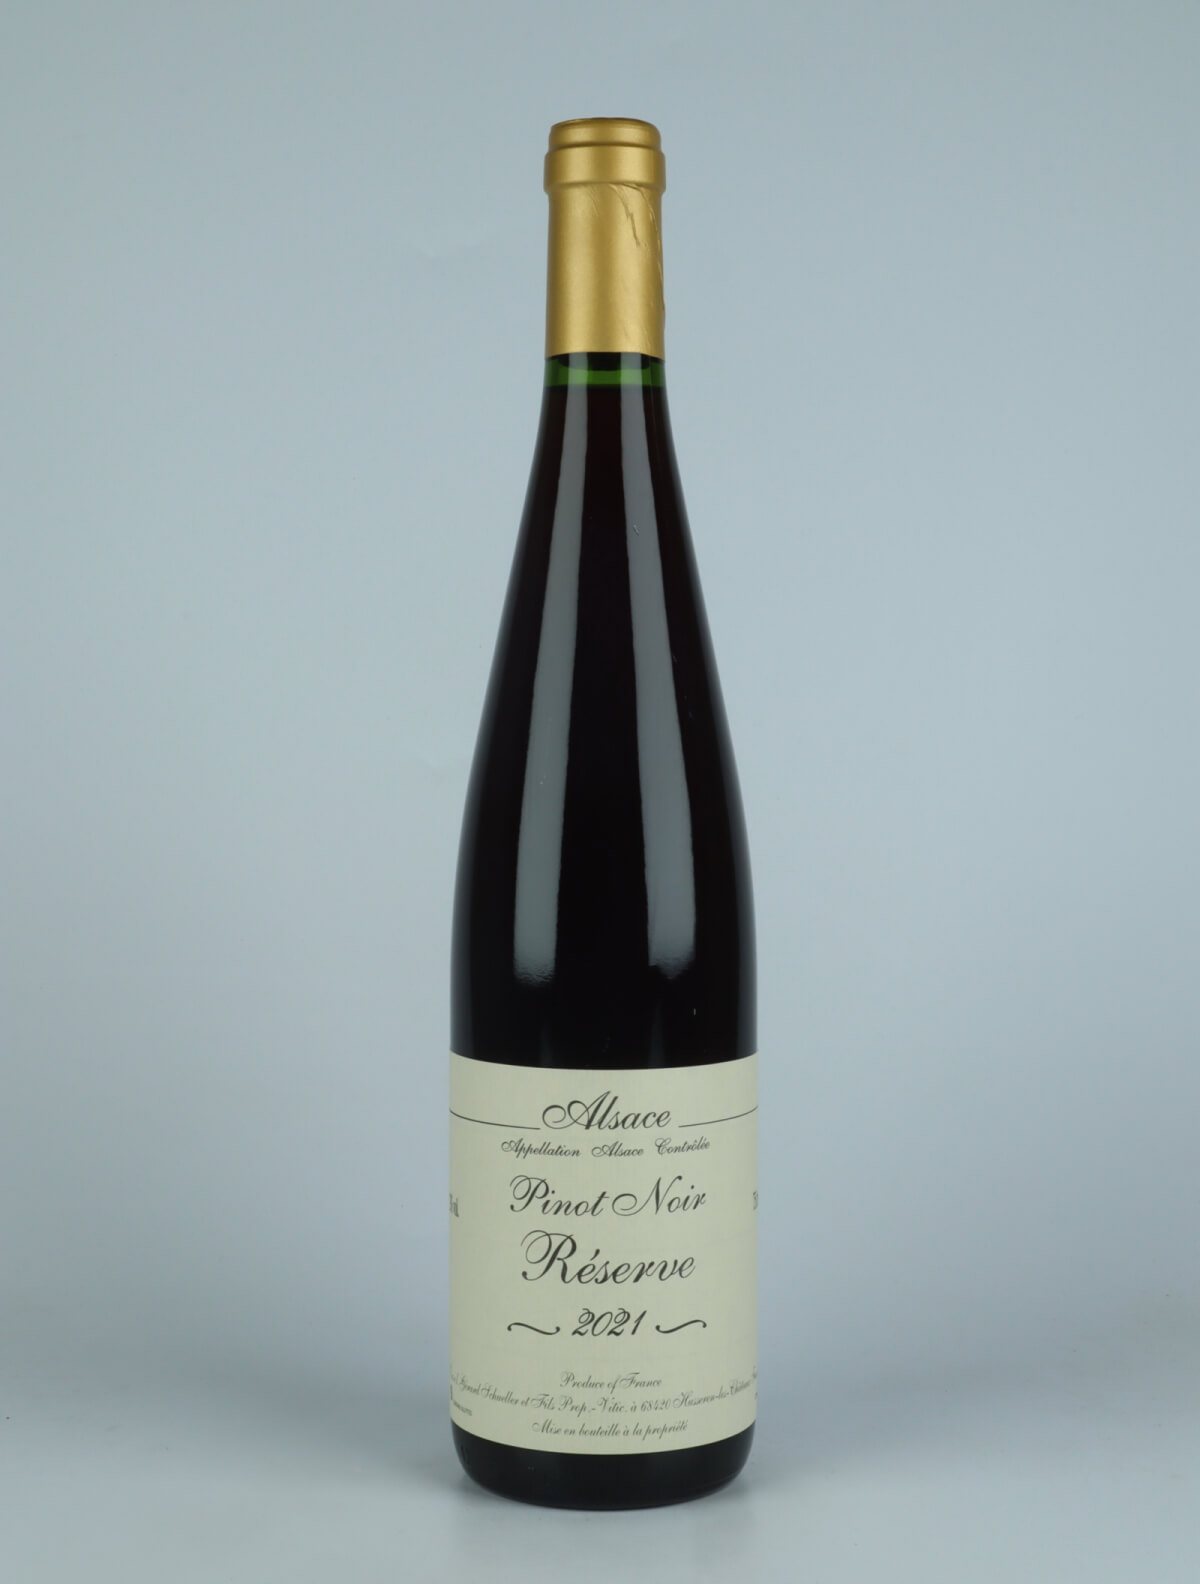 A bottle 2021 Pinot Noir - Réserve Red wine from Gérard Schueller, Alsace in France